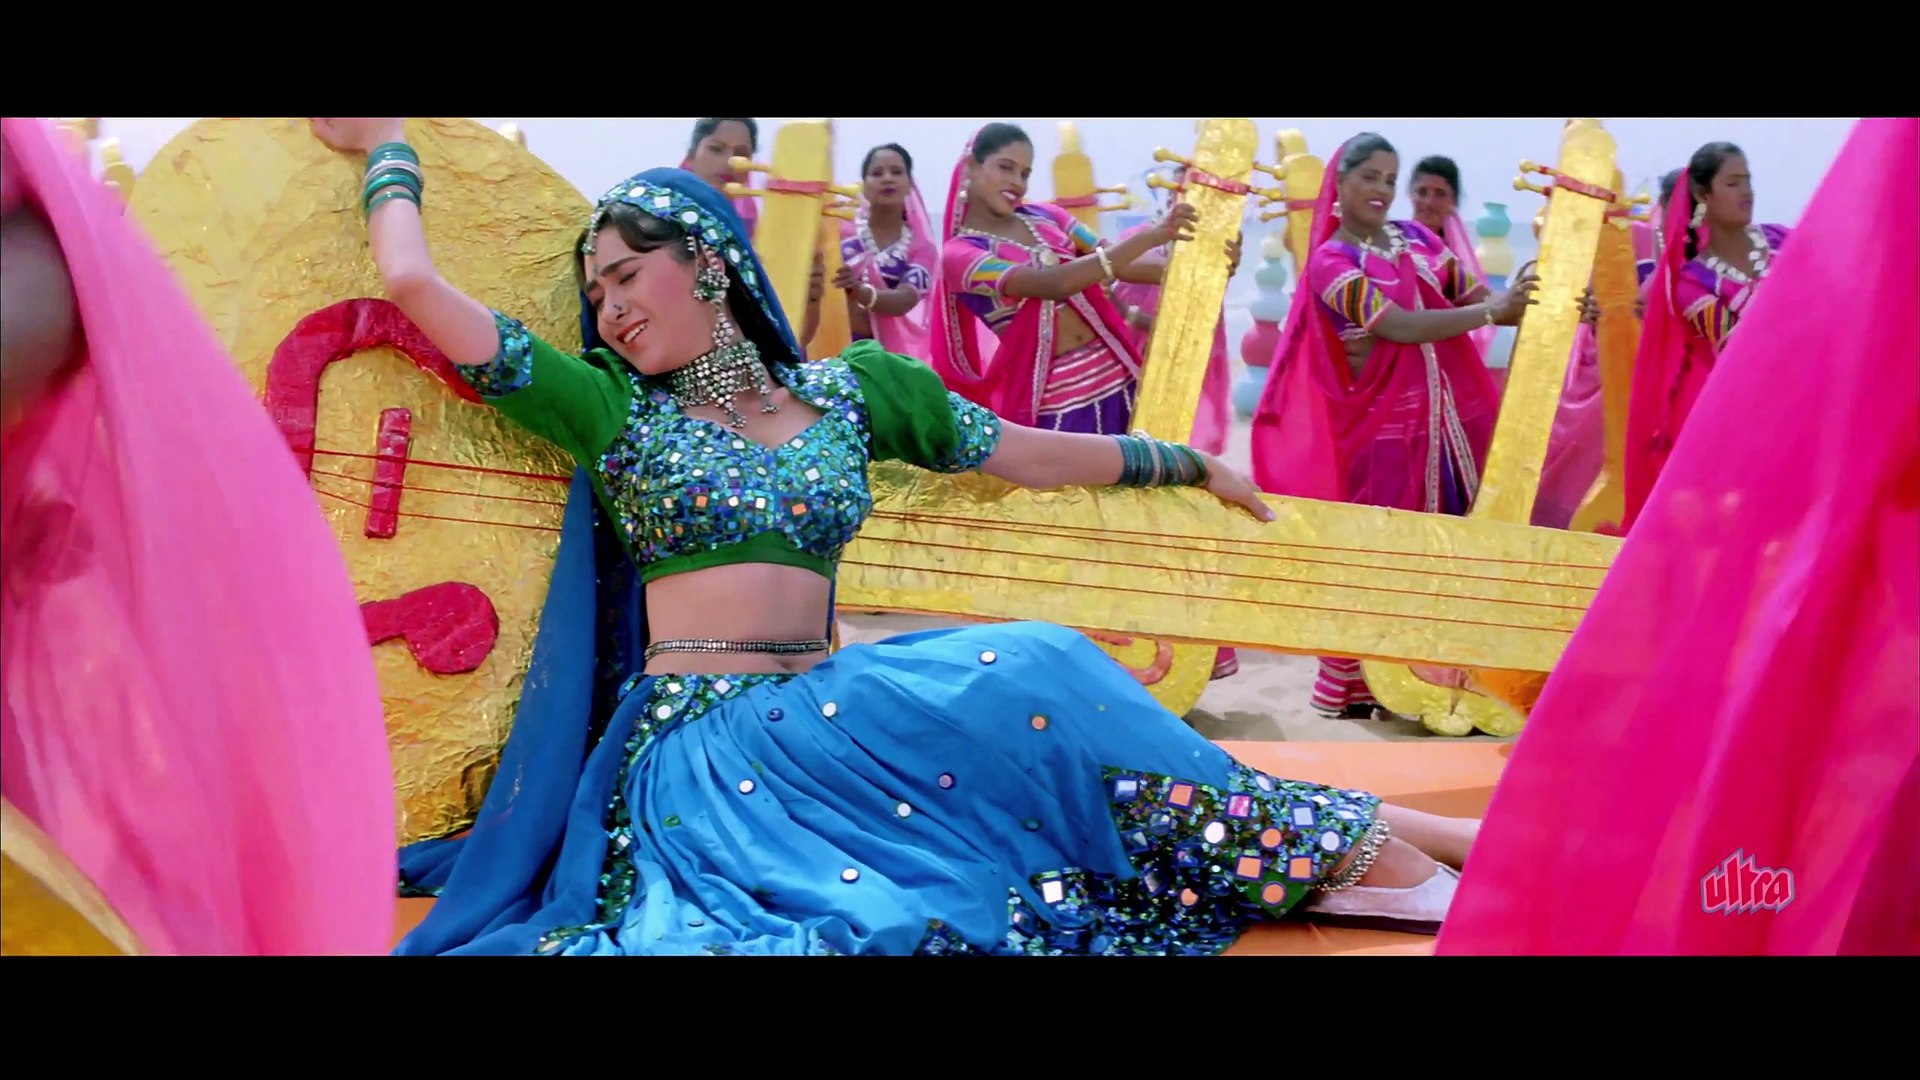 Karishma Kapoor Ki Xxx Video - Karishma Kapoor Hot Navel Song With Govinda - QHD 2560x1440 (4K) - video  Dailymotion